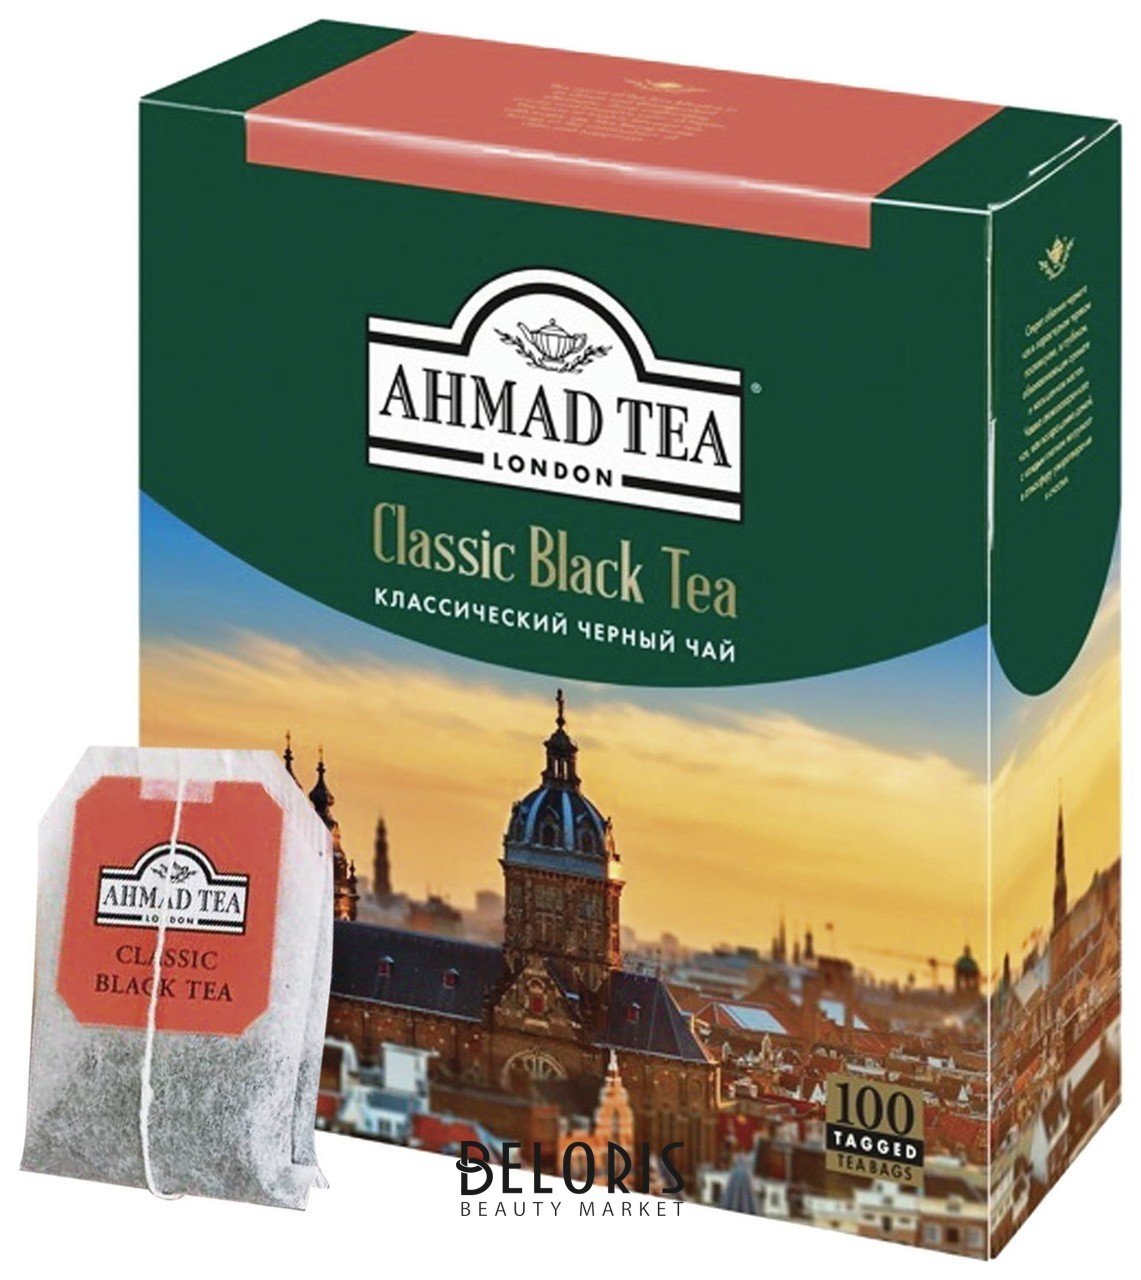 Чай Ahmad Classic Black Tea, черный, 100 пакетиков с ярлычками по 2 г, 1665-08 Ahmad Tea